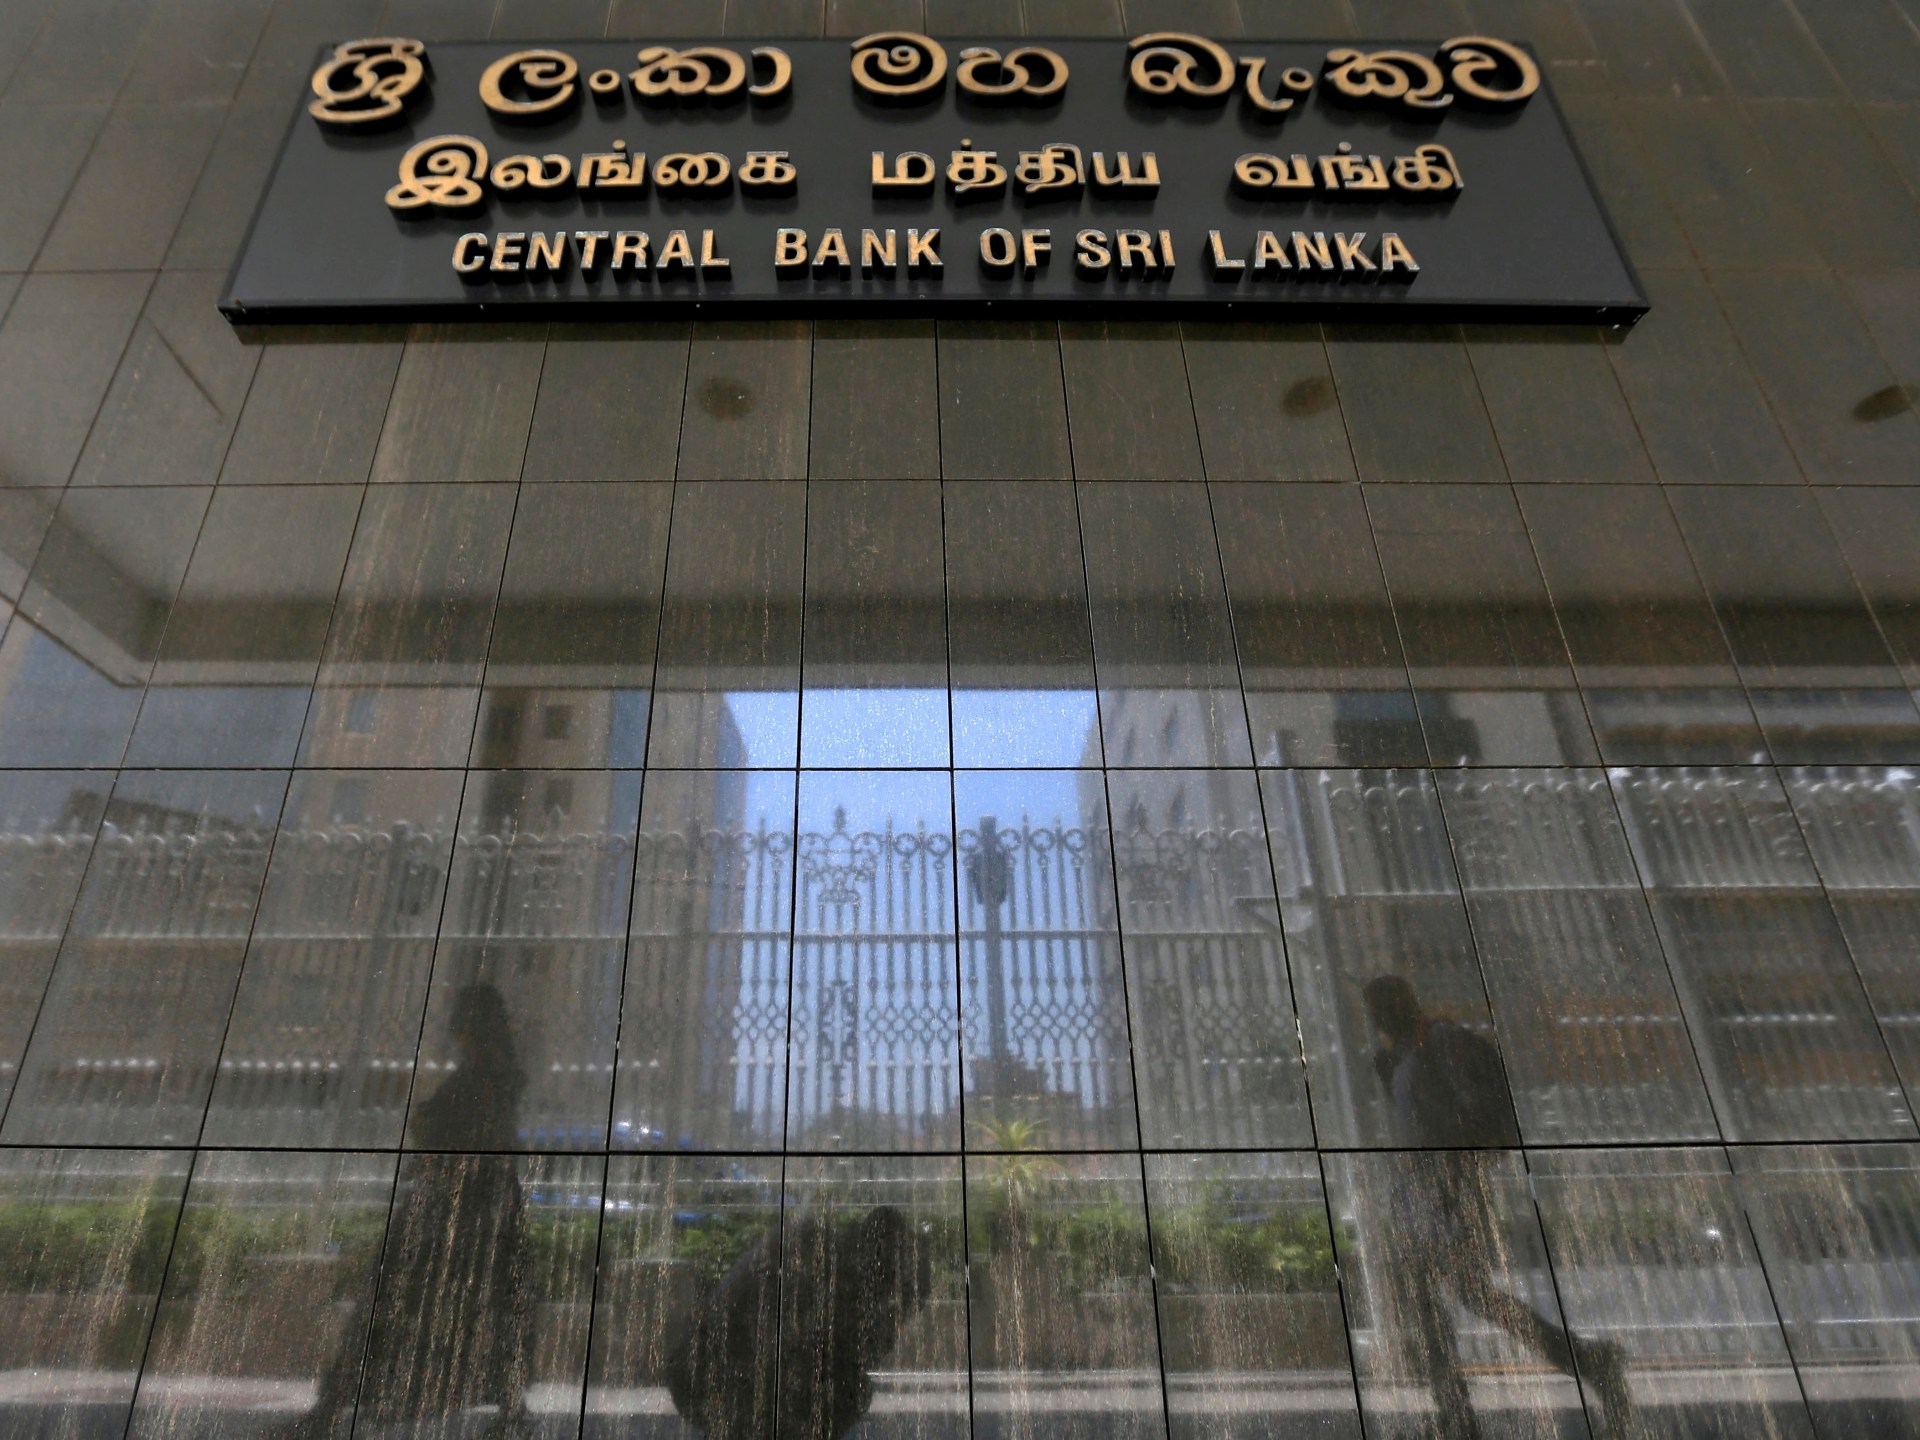 Poin-poin penting dari rencana Sri Lanka untuk merestrukturisasi utang dalam negeri |  Berita Bisnis dan Ekonomi